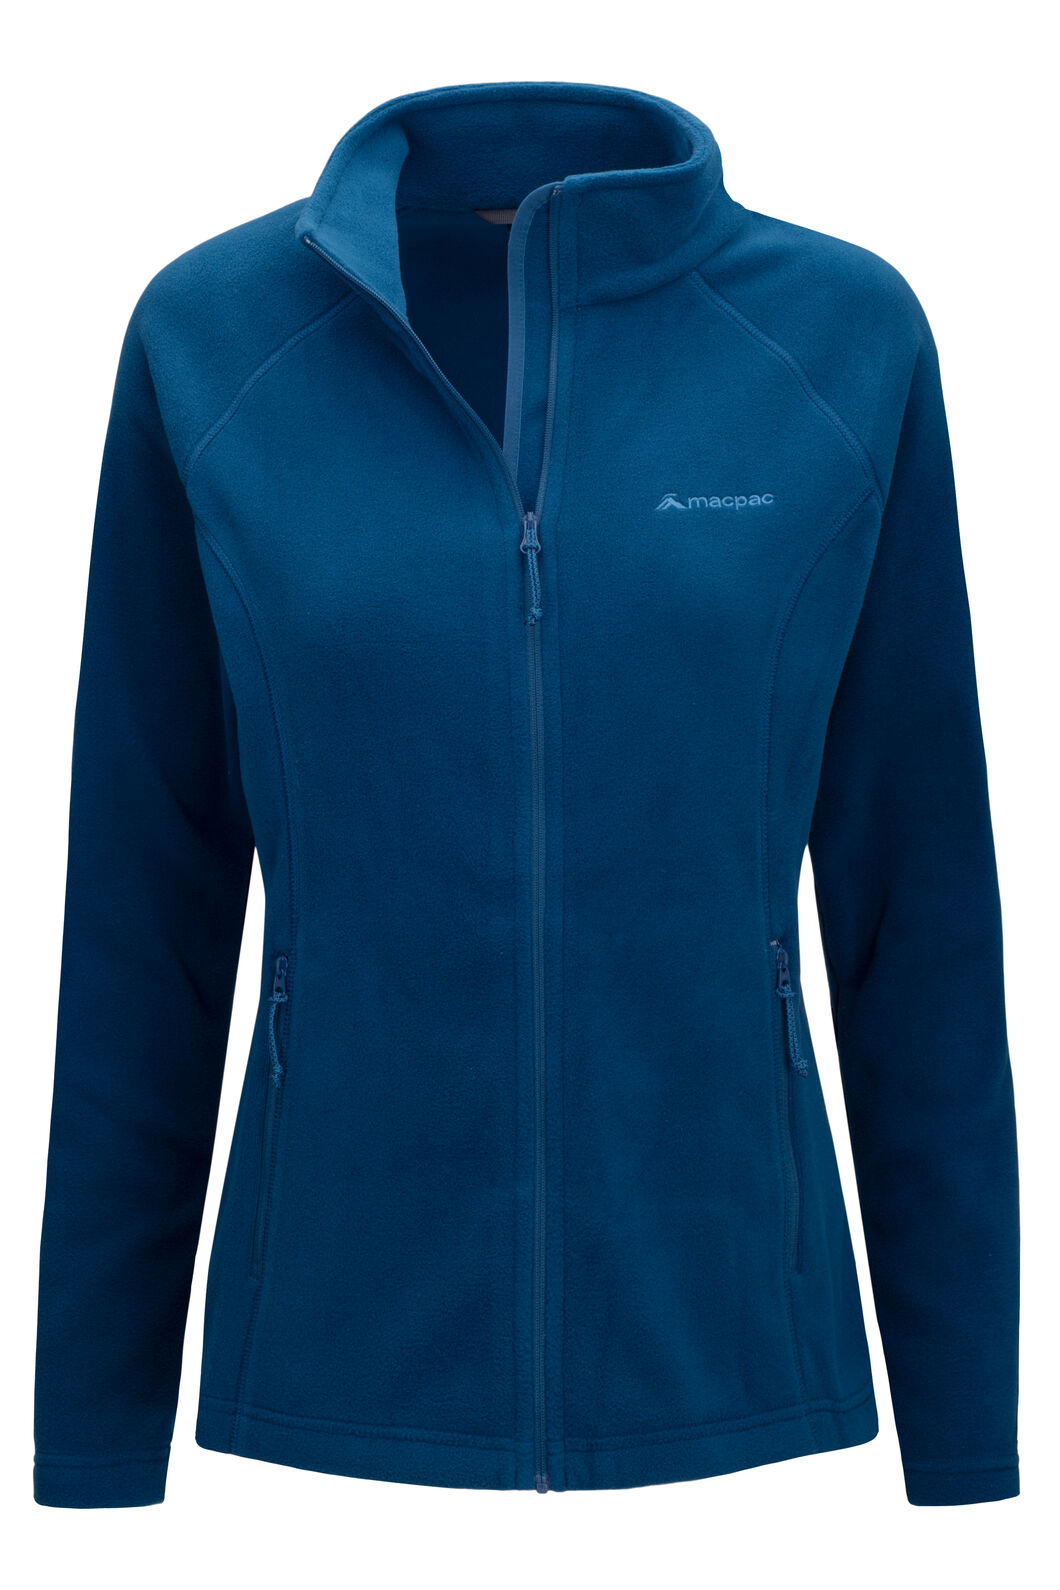 Macpac Women's Tui Polartec® Micro Fleece® Jacket, Poseidon, hi-res